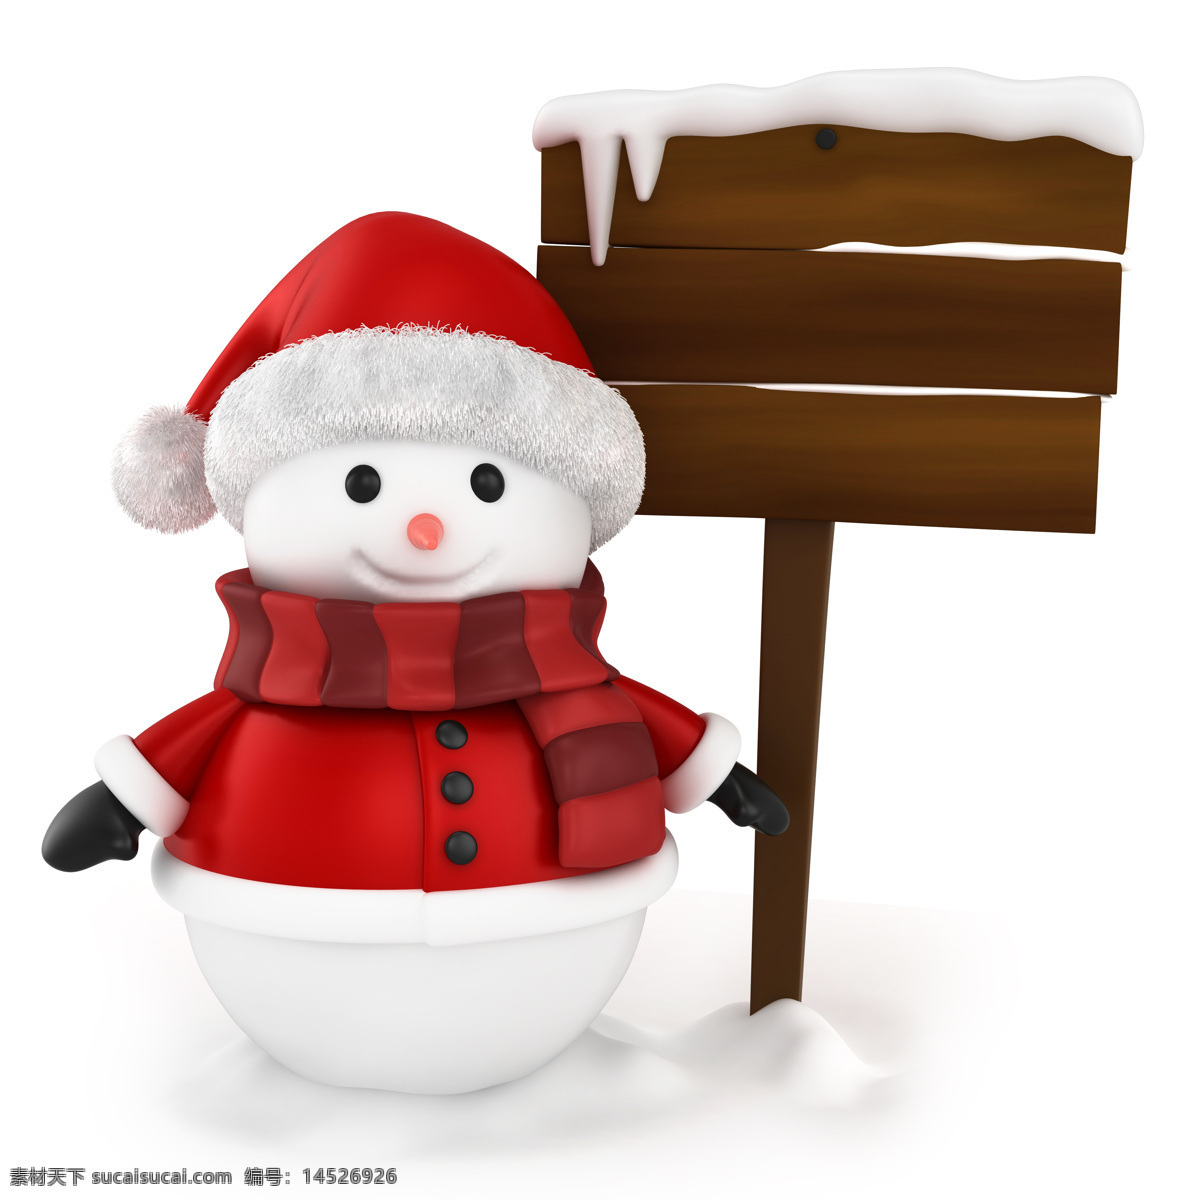 木板 前 微笑 雪人 卡通画 微笑的雪人 圣诞帽 围巾 白雪 节日庆典 生活百科